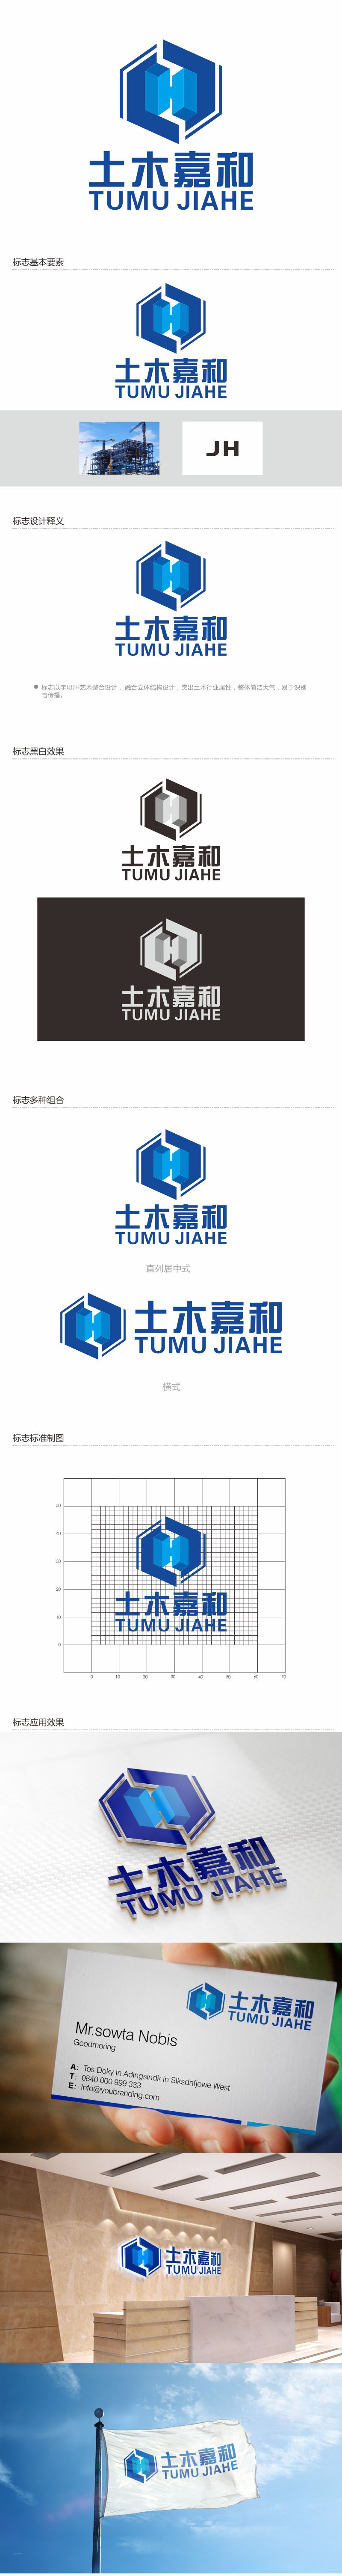 何嘉健的北京土木嘉和工程咨询有限公司logo设计